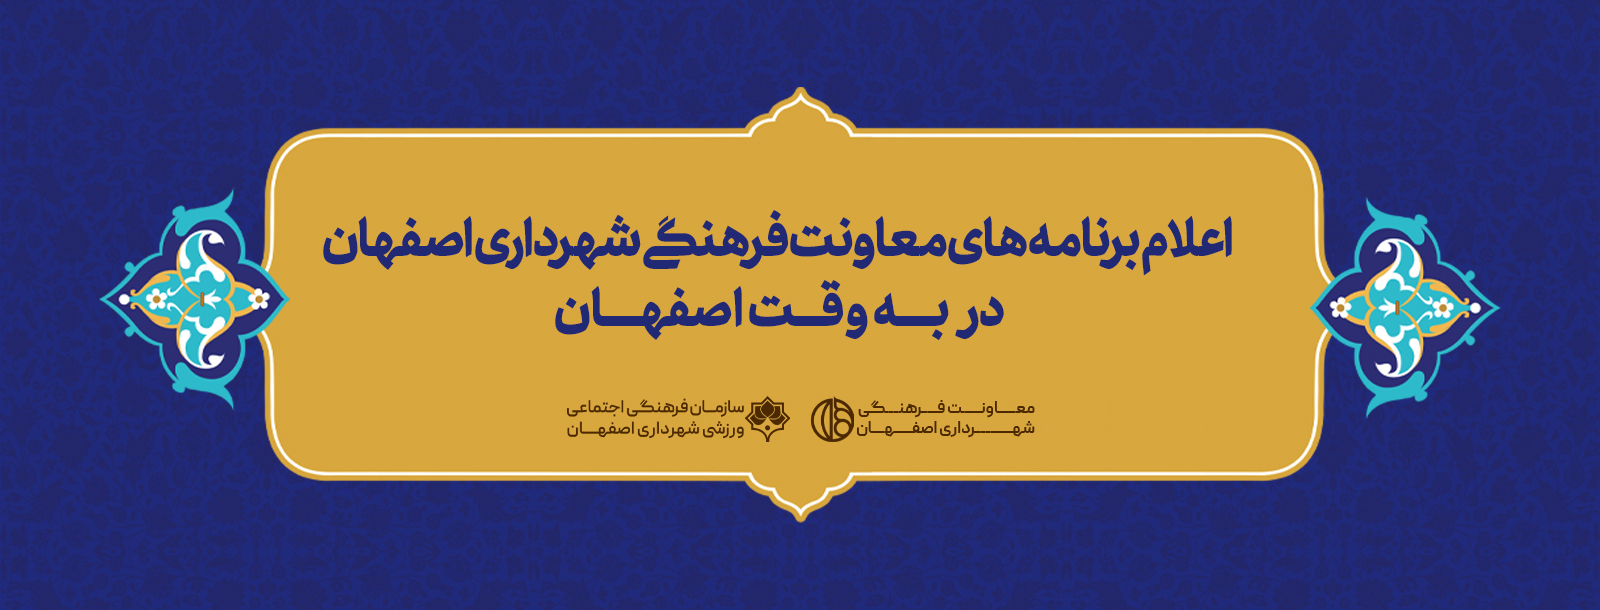 مراکز سازمان فرهنگی اجتماعی ورزشی شهرداری اصفهان